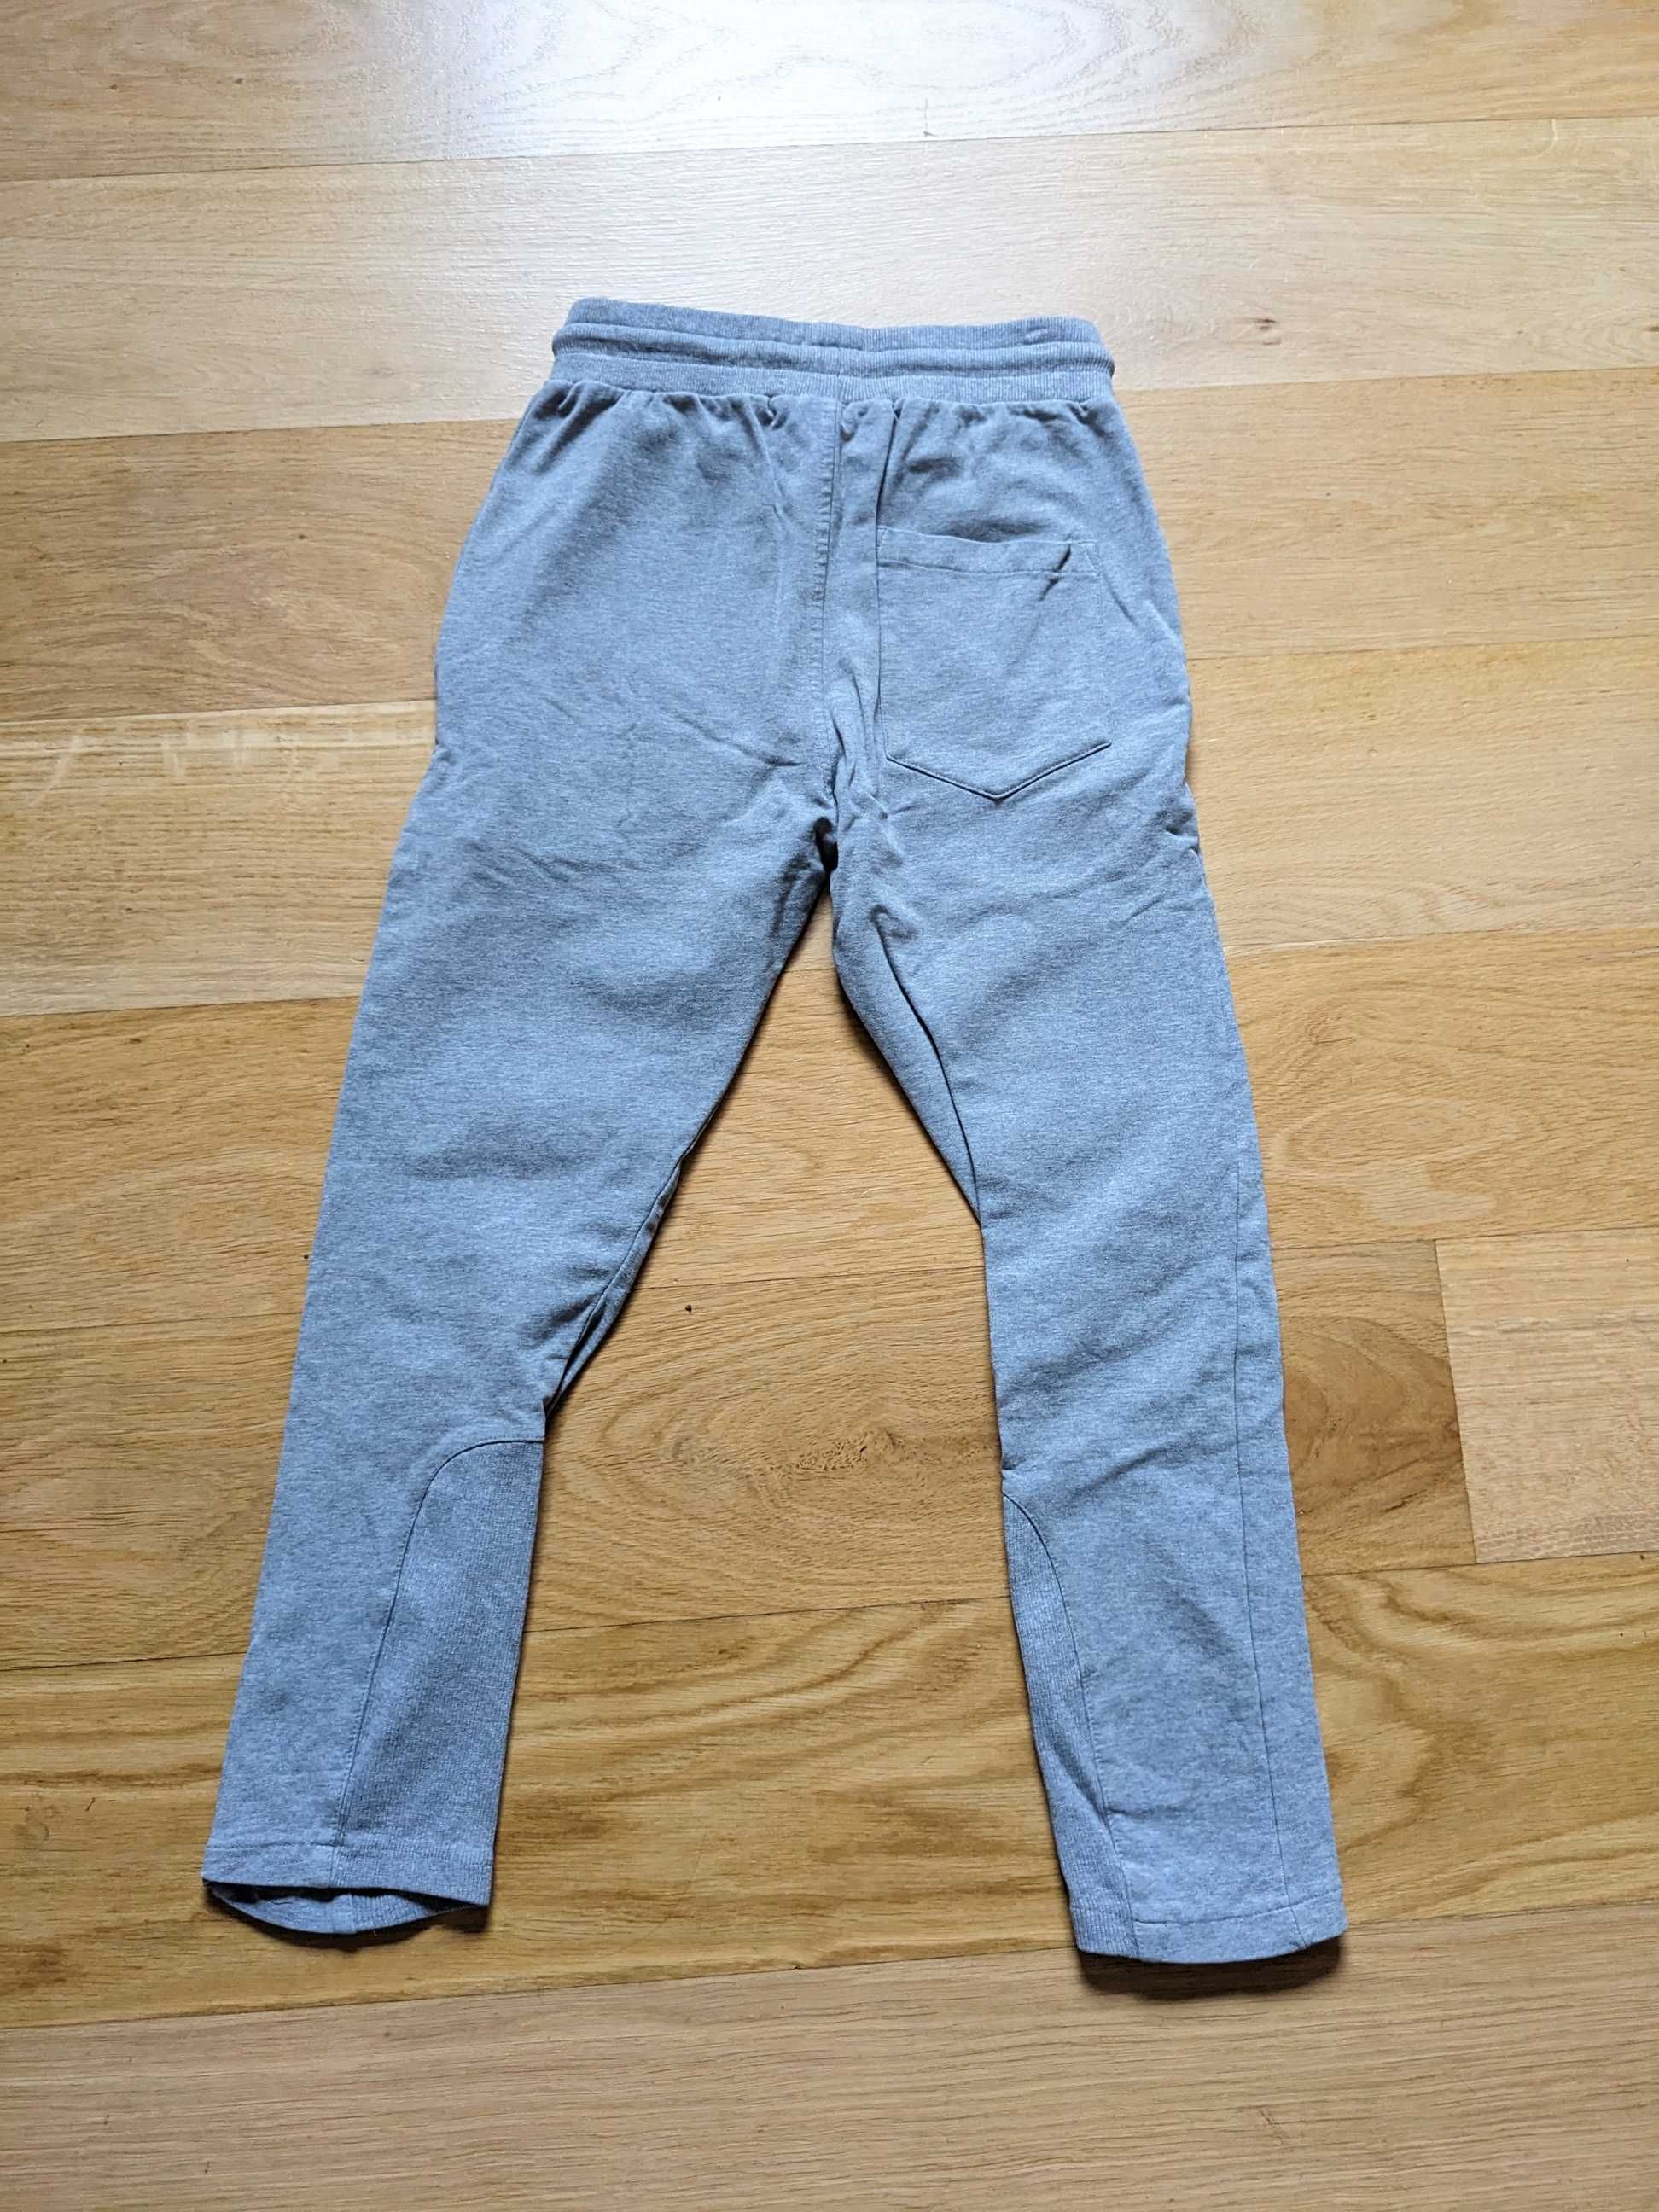 Spodnie dresowe Hummel dla chłopca 10 lat (140 cm).